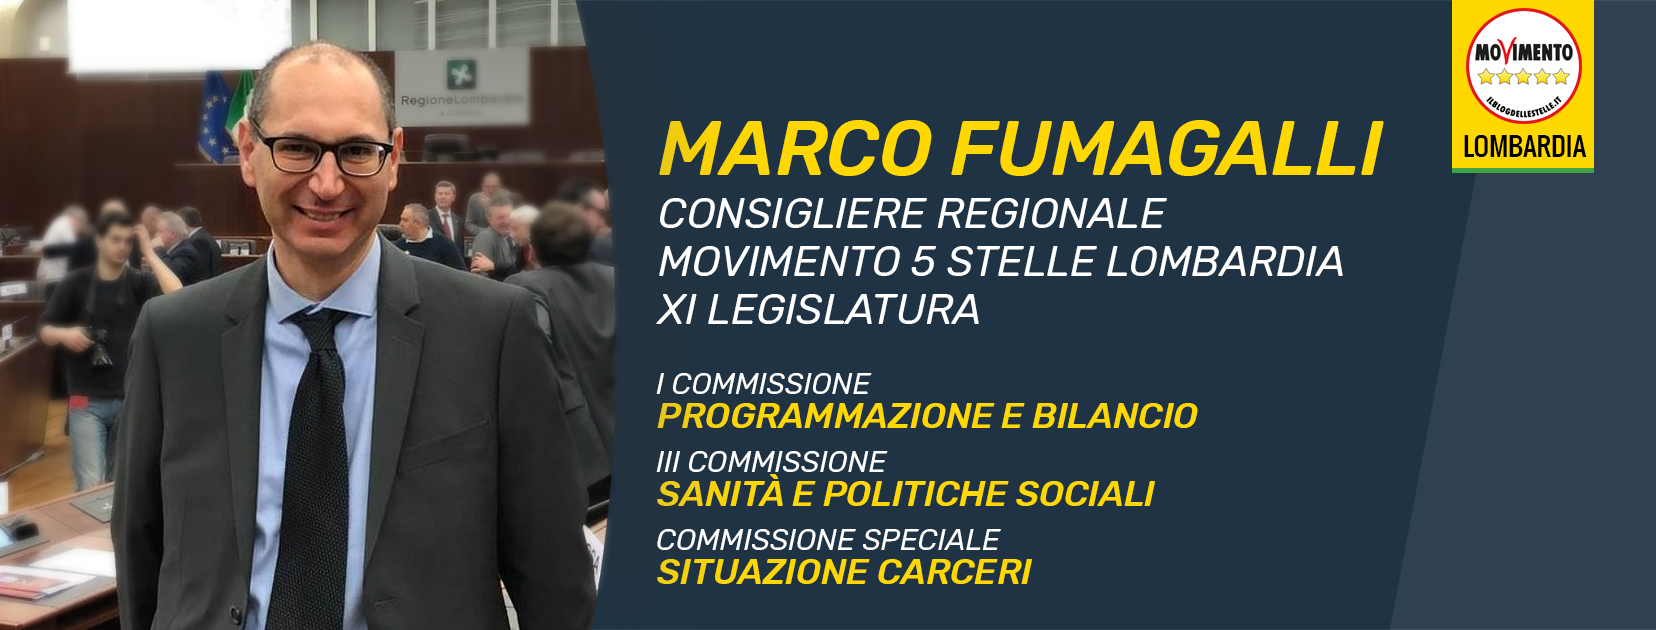 Marco Fumagalli